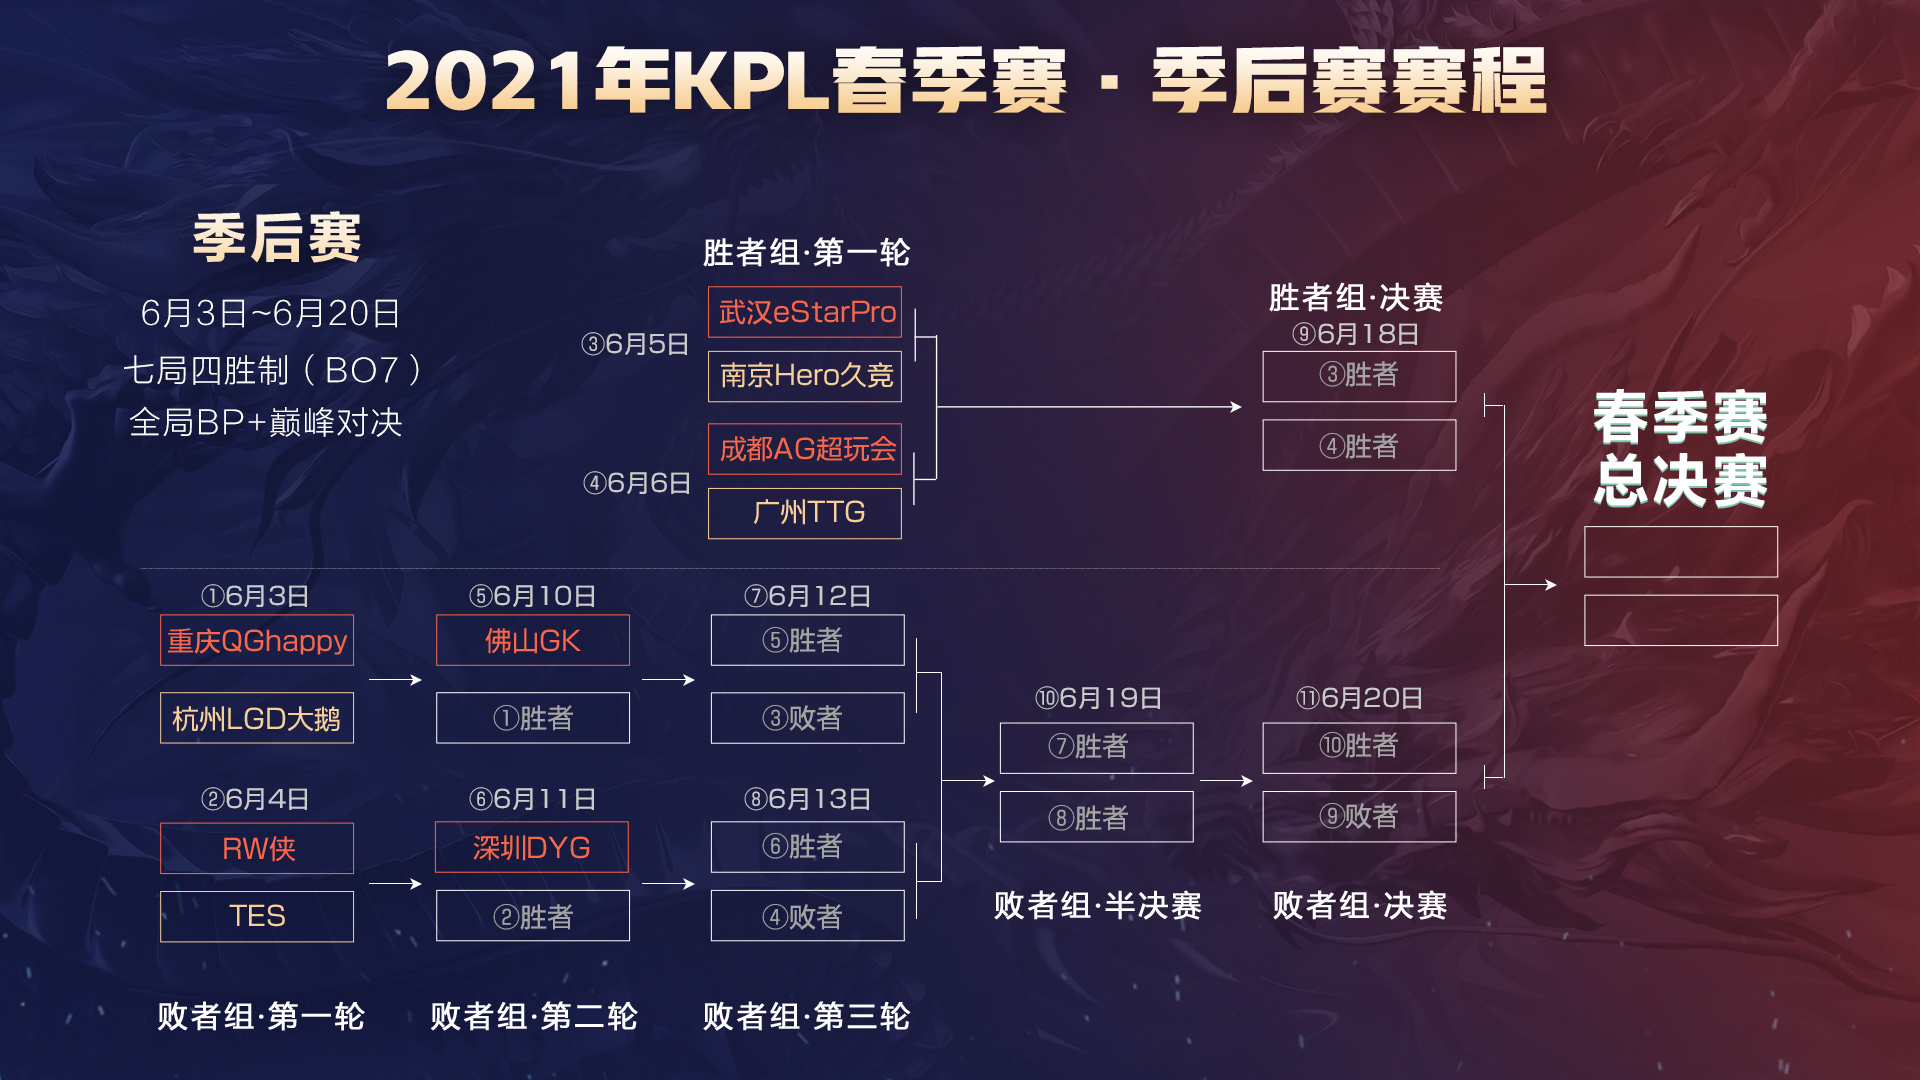 2021年KPL秋季赛季后赛赛程公布-王者荣耀官方网站-腾讯游戏